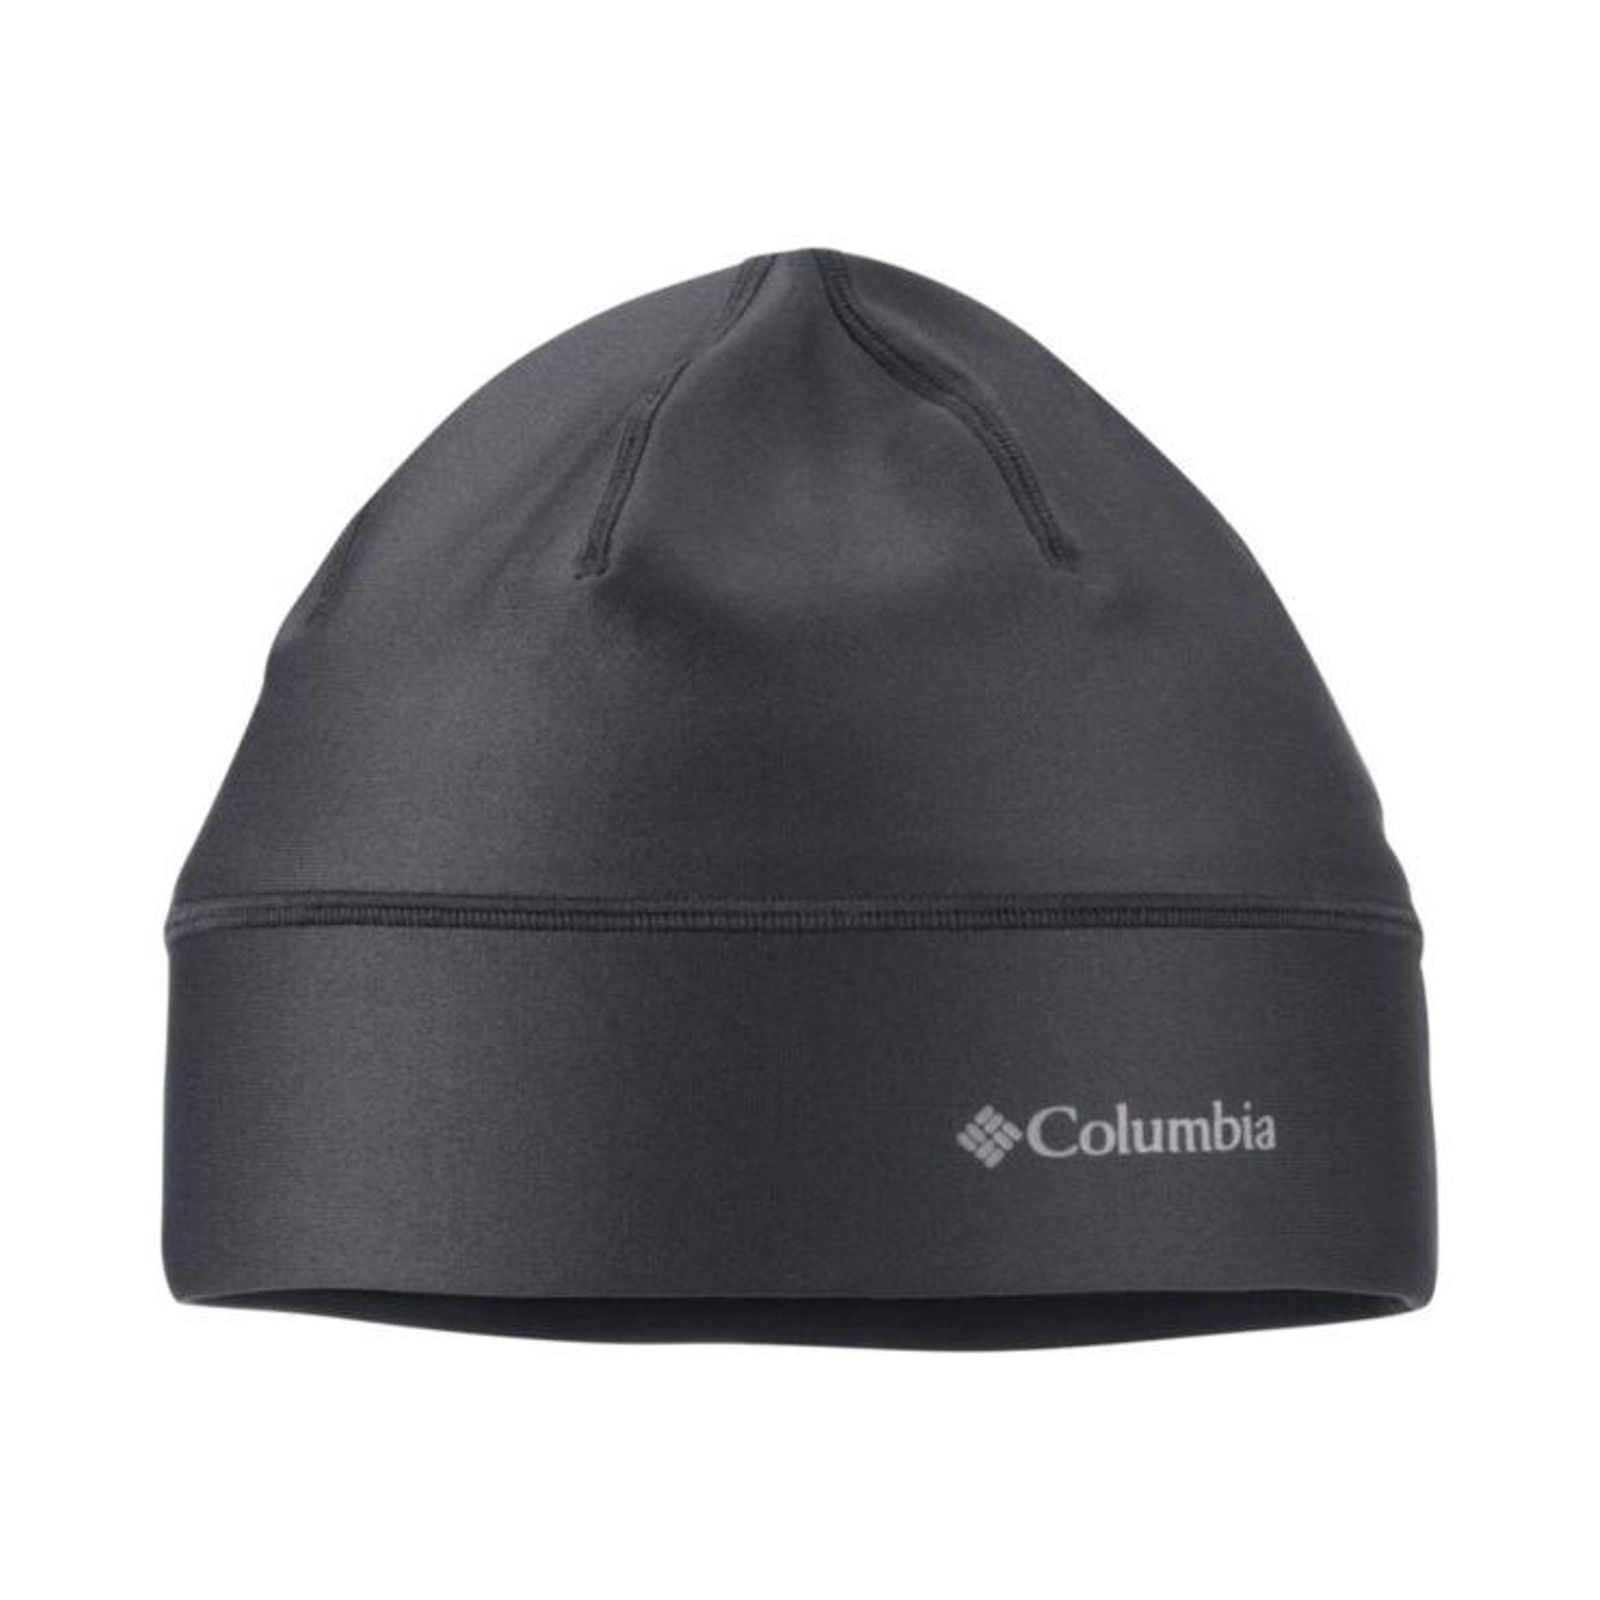 کلاه مردانه کلمبیا مدل M Trail کد CM9510 -  - 2